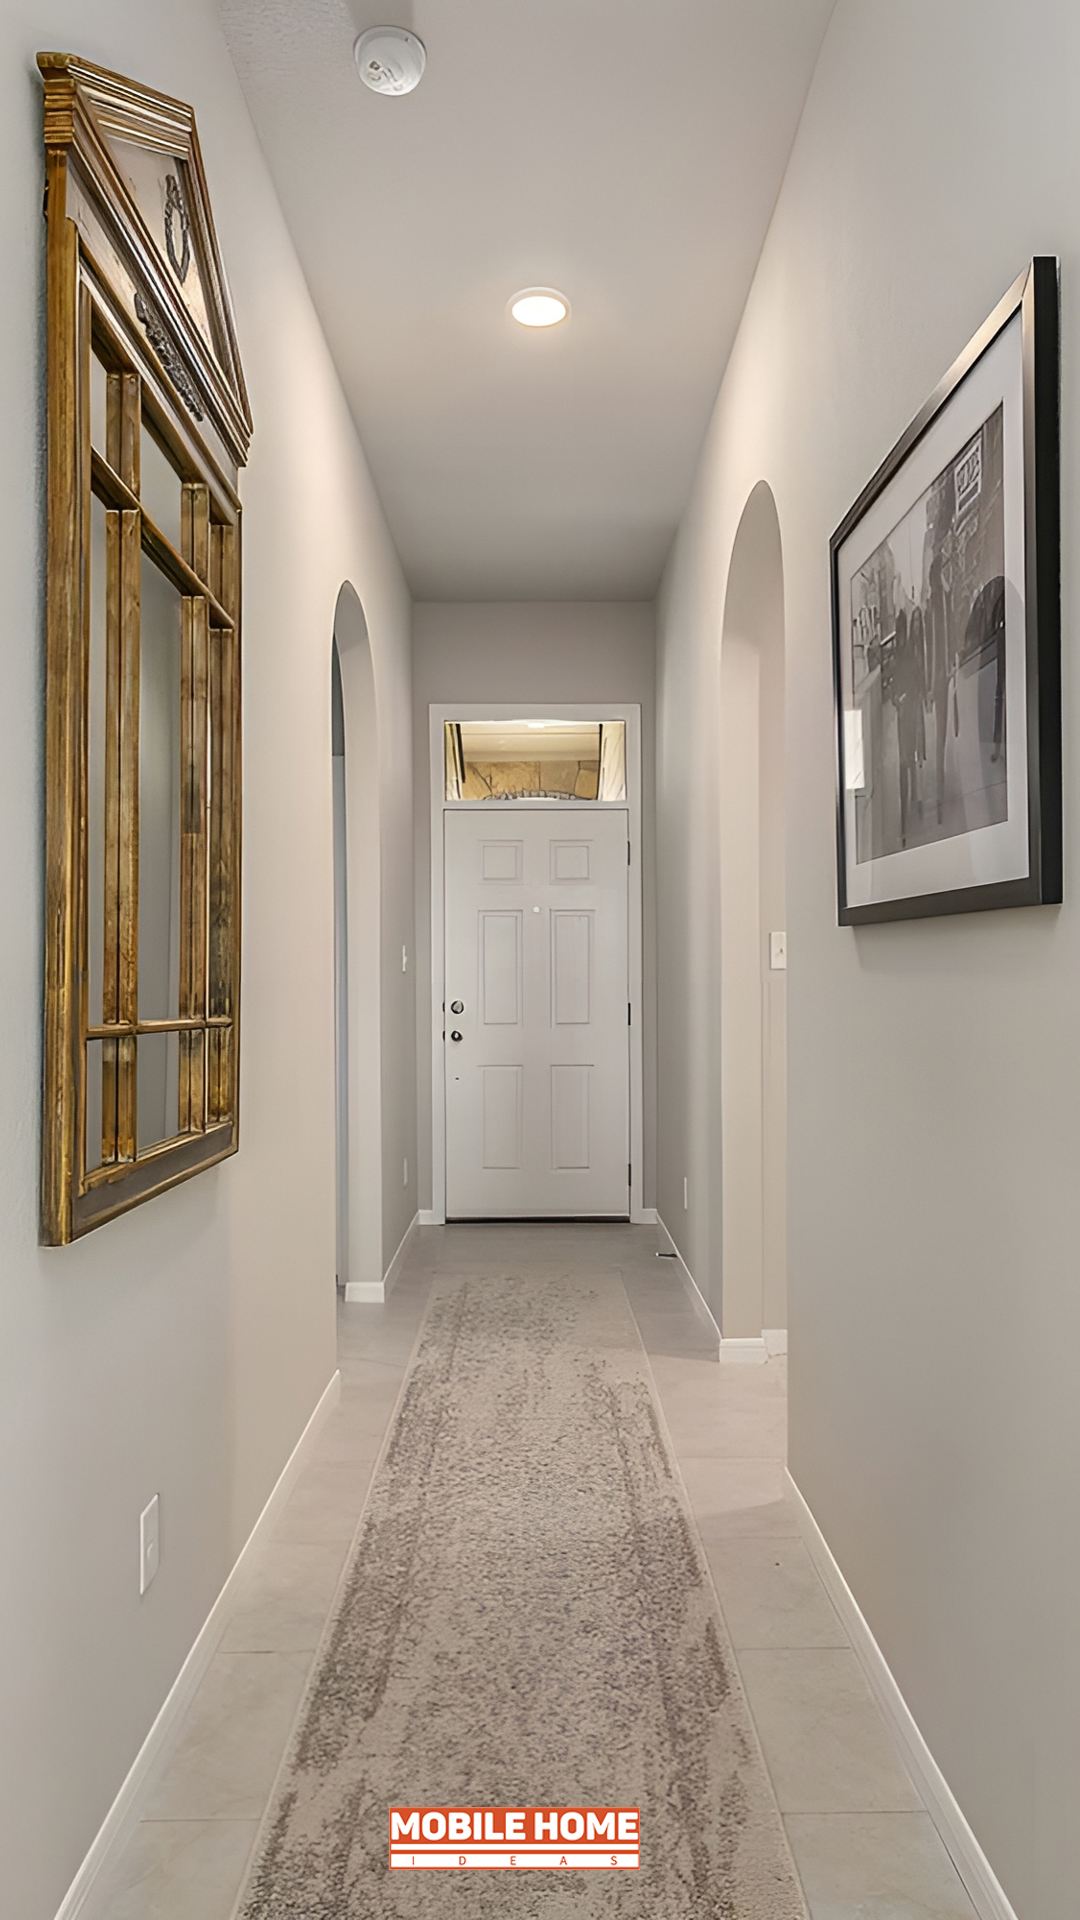 Mobile-Home-Hallway-Door Upgrades